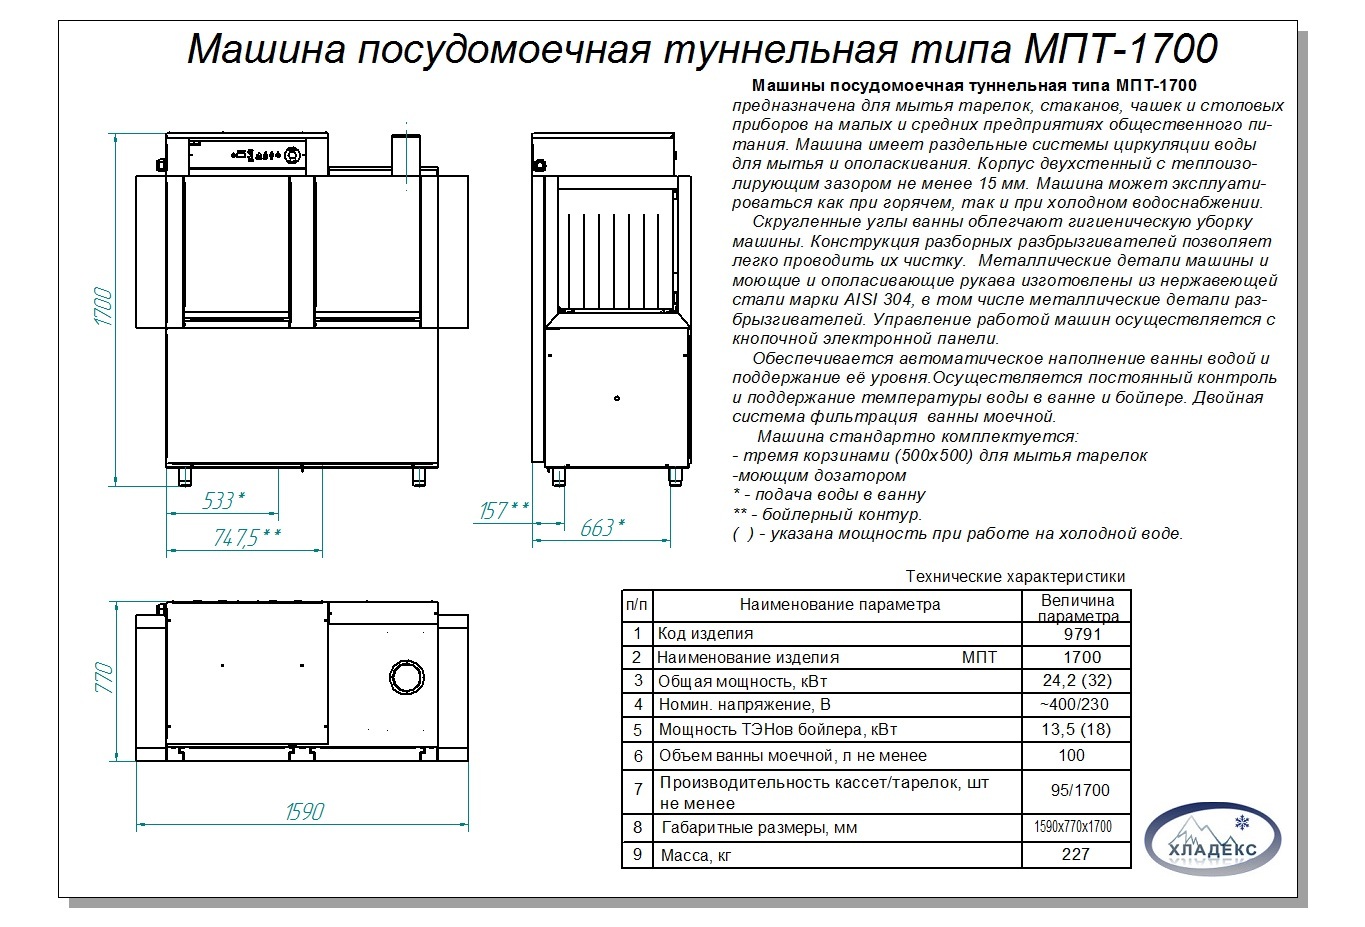 Посудомоечная машина 1700. МПТ-1700 посудомоечная машина. Посудомоечная машина Абат МПК 1700. Туннельная посудомоечная машина МПТ-1700. Машина посудомоечная туннельная МПТ-1700 (правая).